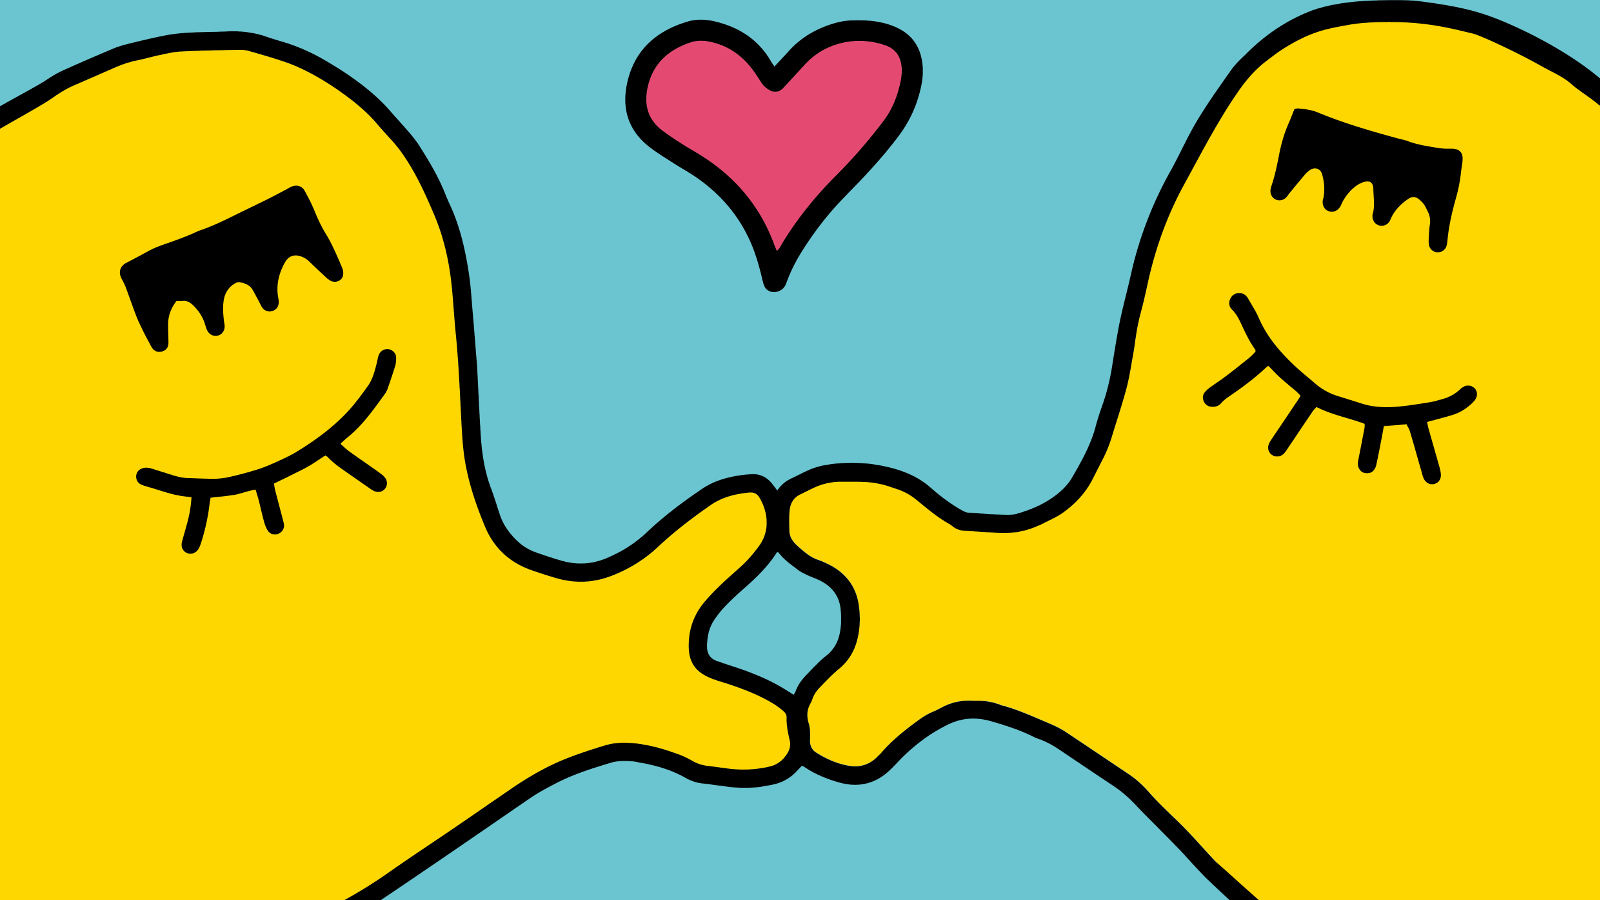 Kuvassa on turkoosilla pohjalla kaksi keltaista pulleaa hahmoa, jotka pussaavat.  Keskellä on punainen sydän.